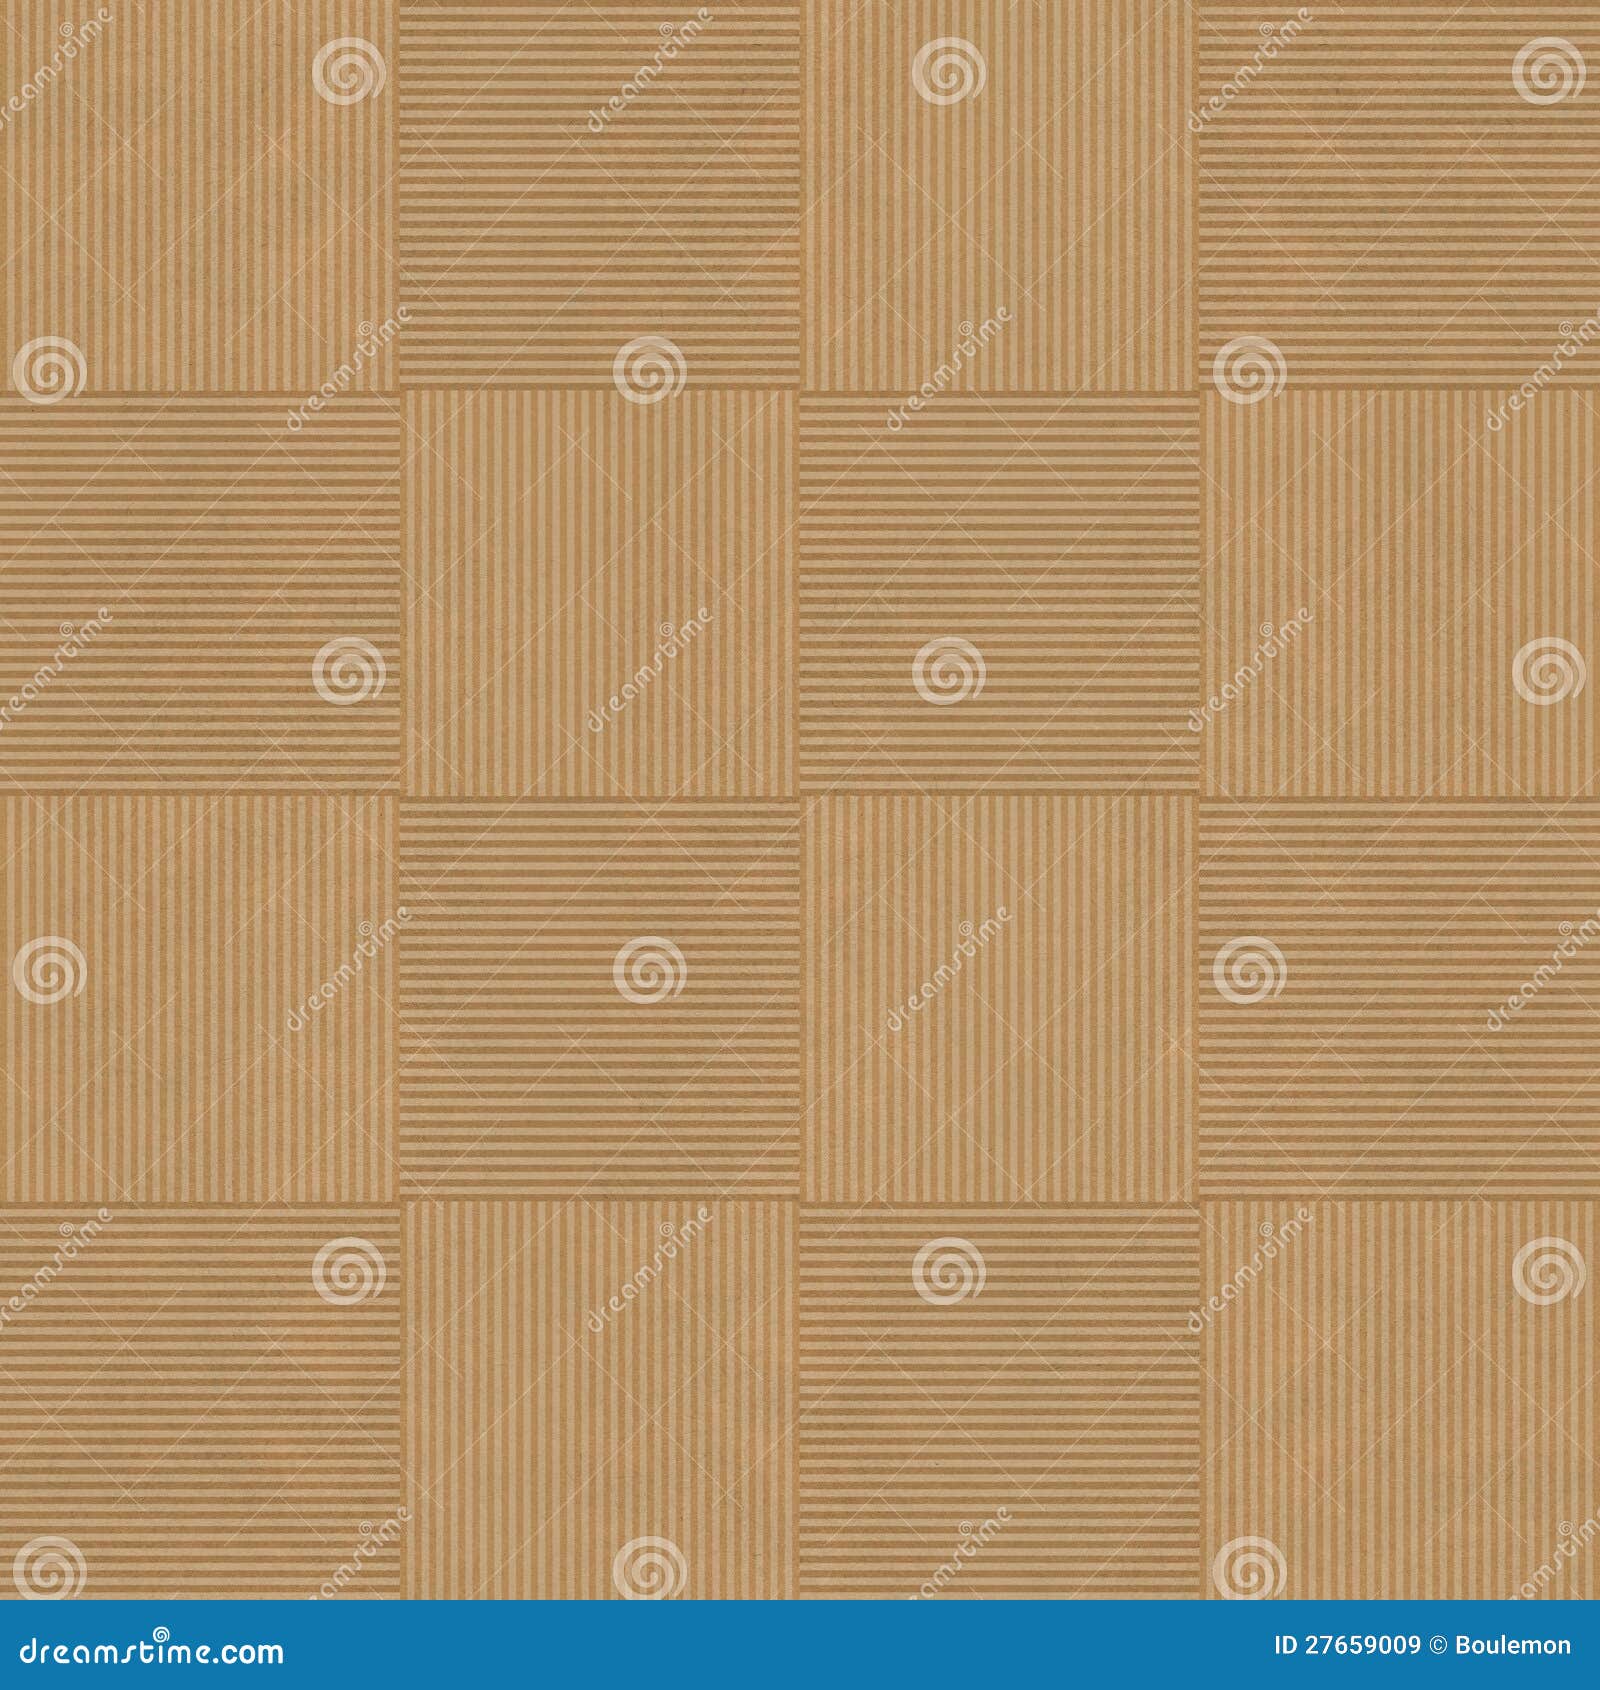 seamless geometric pattern mosaics